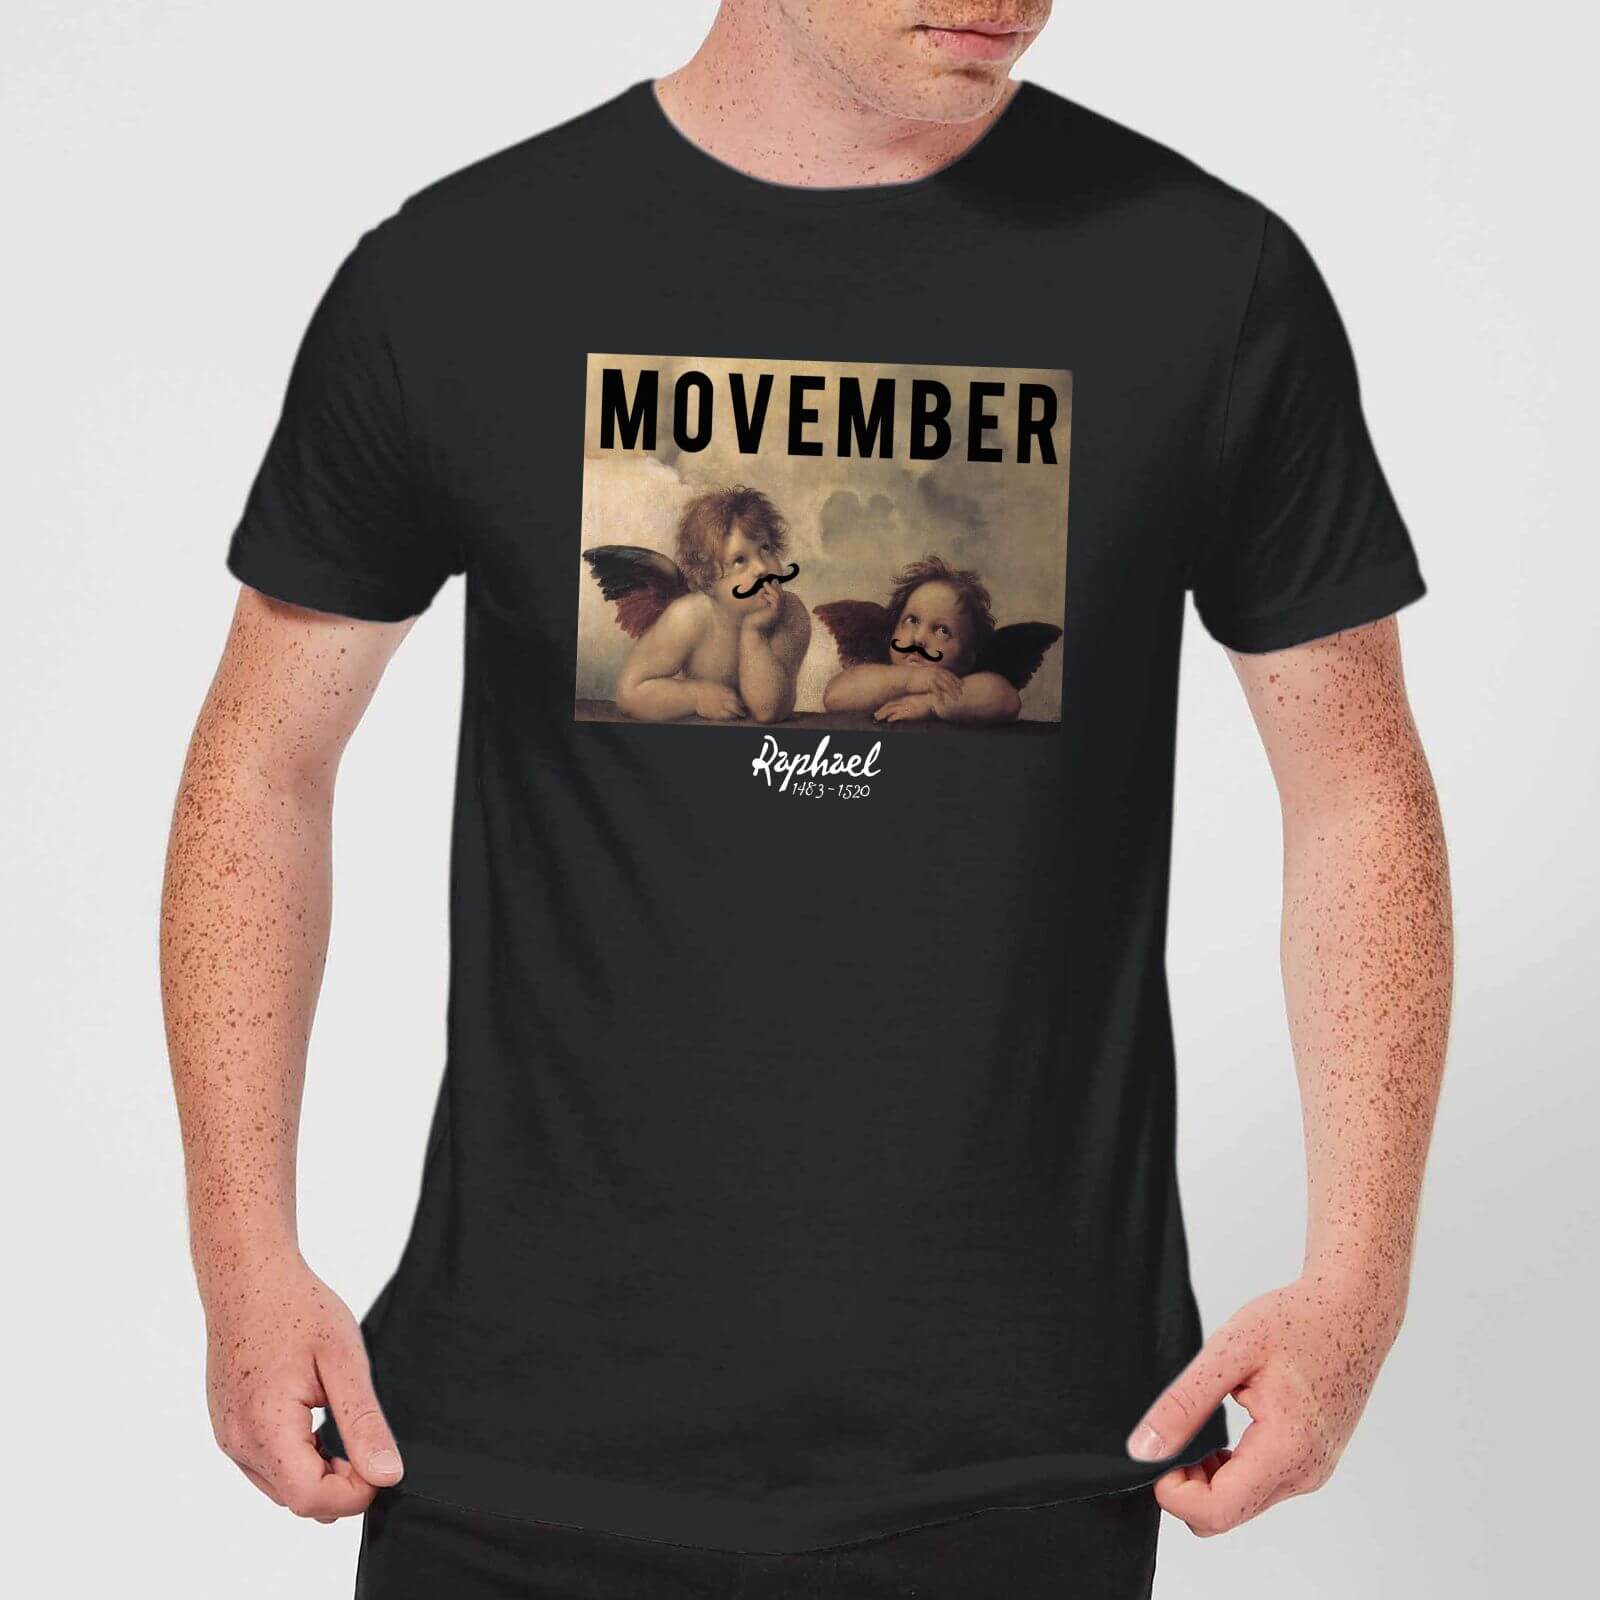 Raphael Movember T-Shirt - Black - S - Black